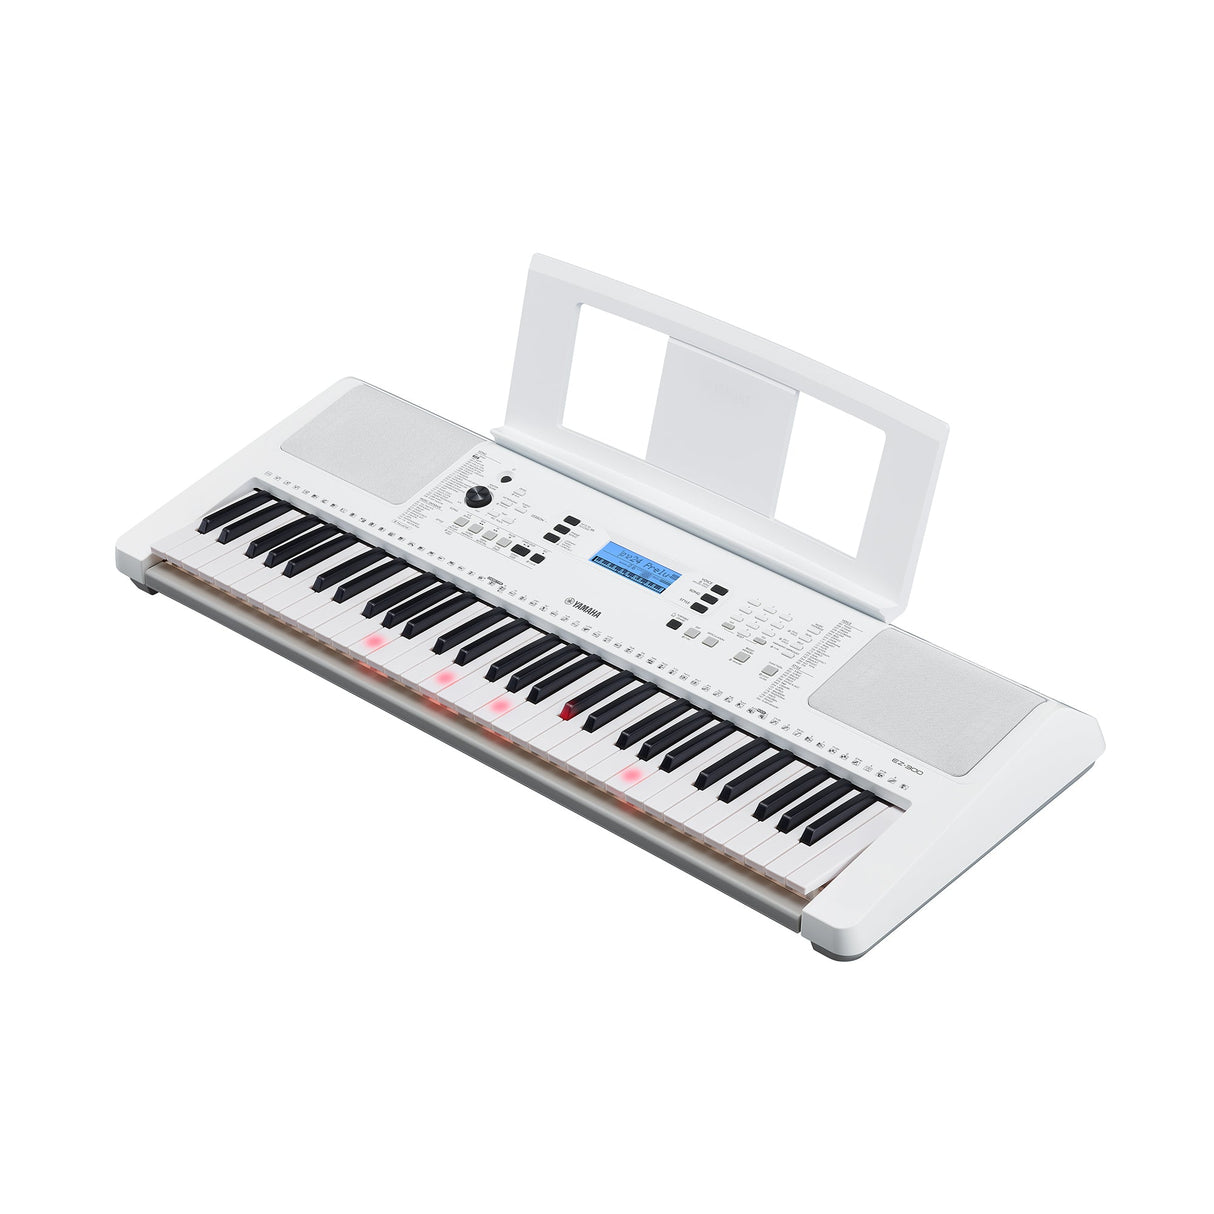 yamaha ez300 white keyboard with light up keys